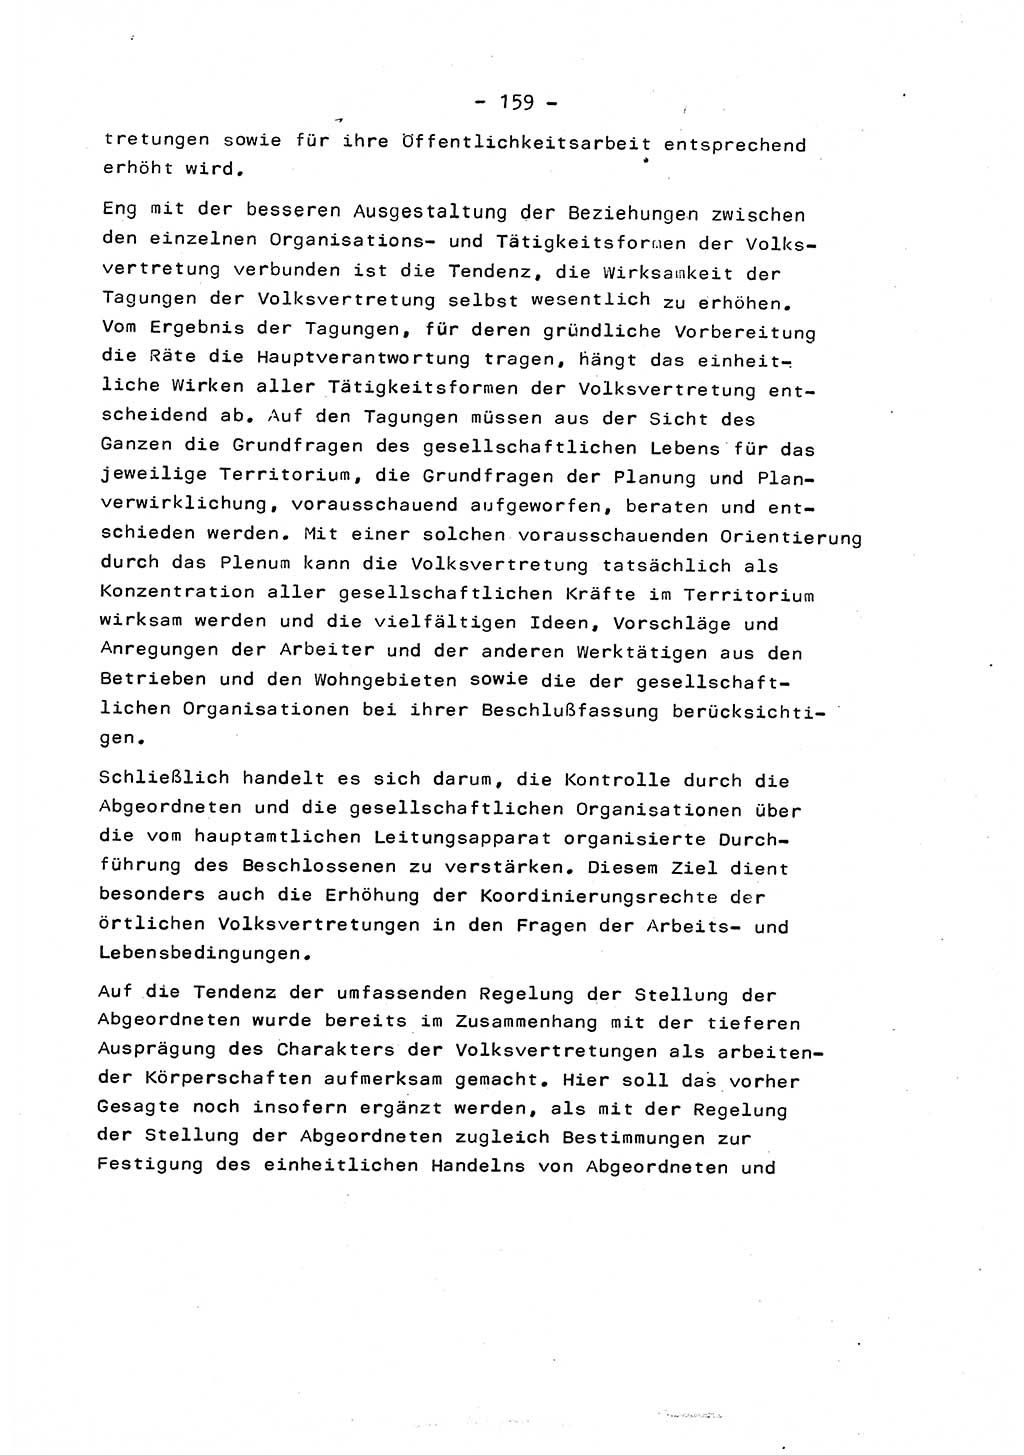 Marxistisch-leninistische Staats- und Rechtstheorie [Deutsche Demokratische Republik (DDR)] 1975, Seite 159 (ML St.-R.-Th. DDR 1975, S. 159)